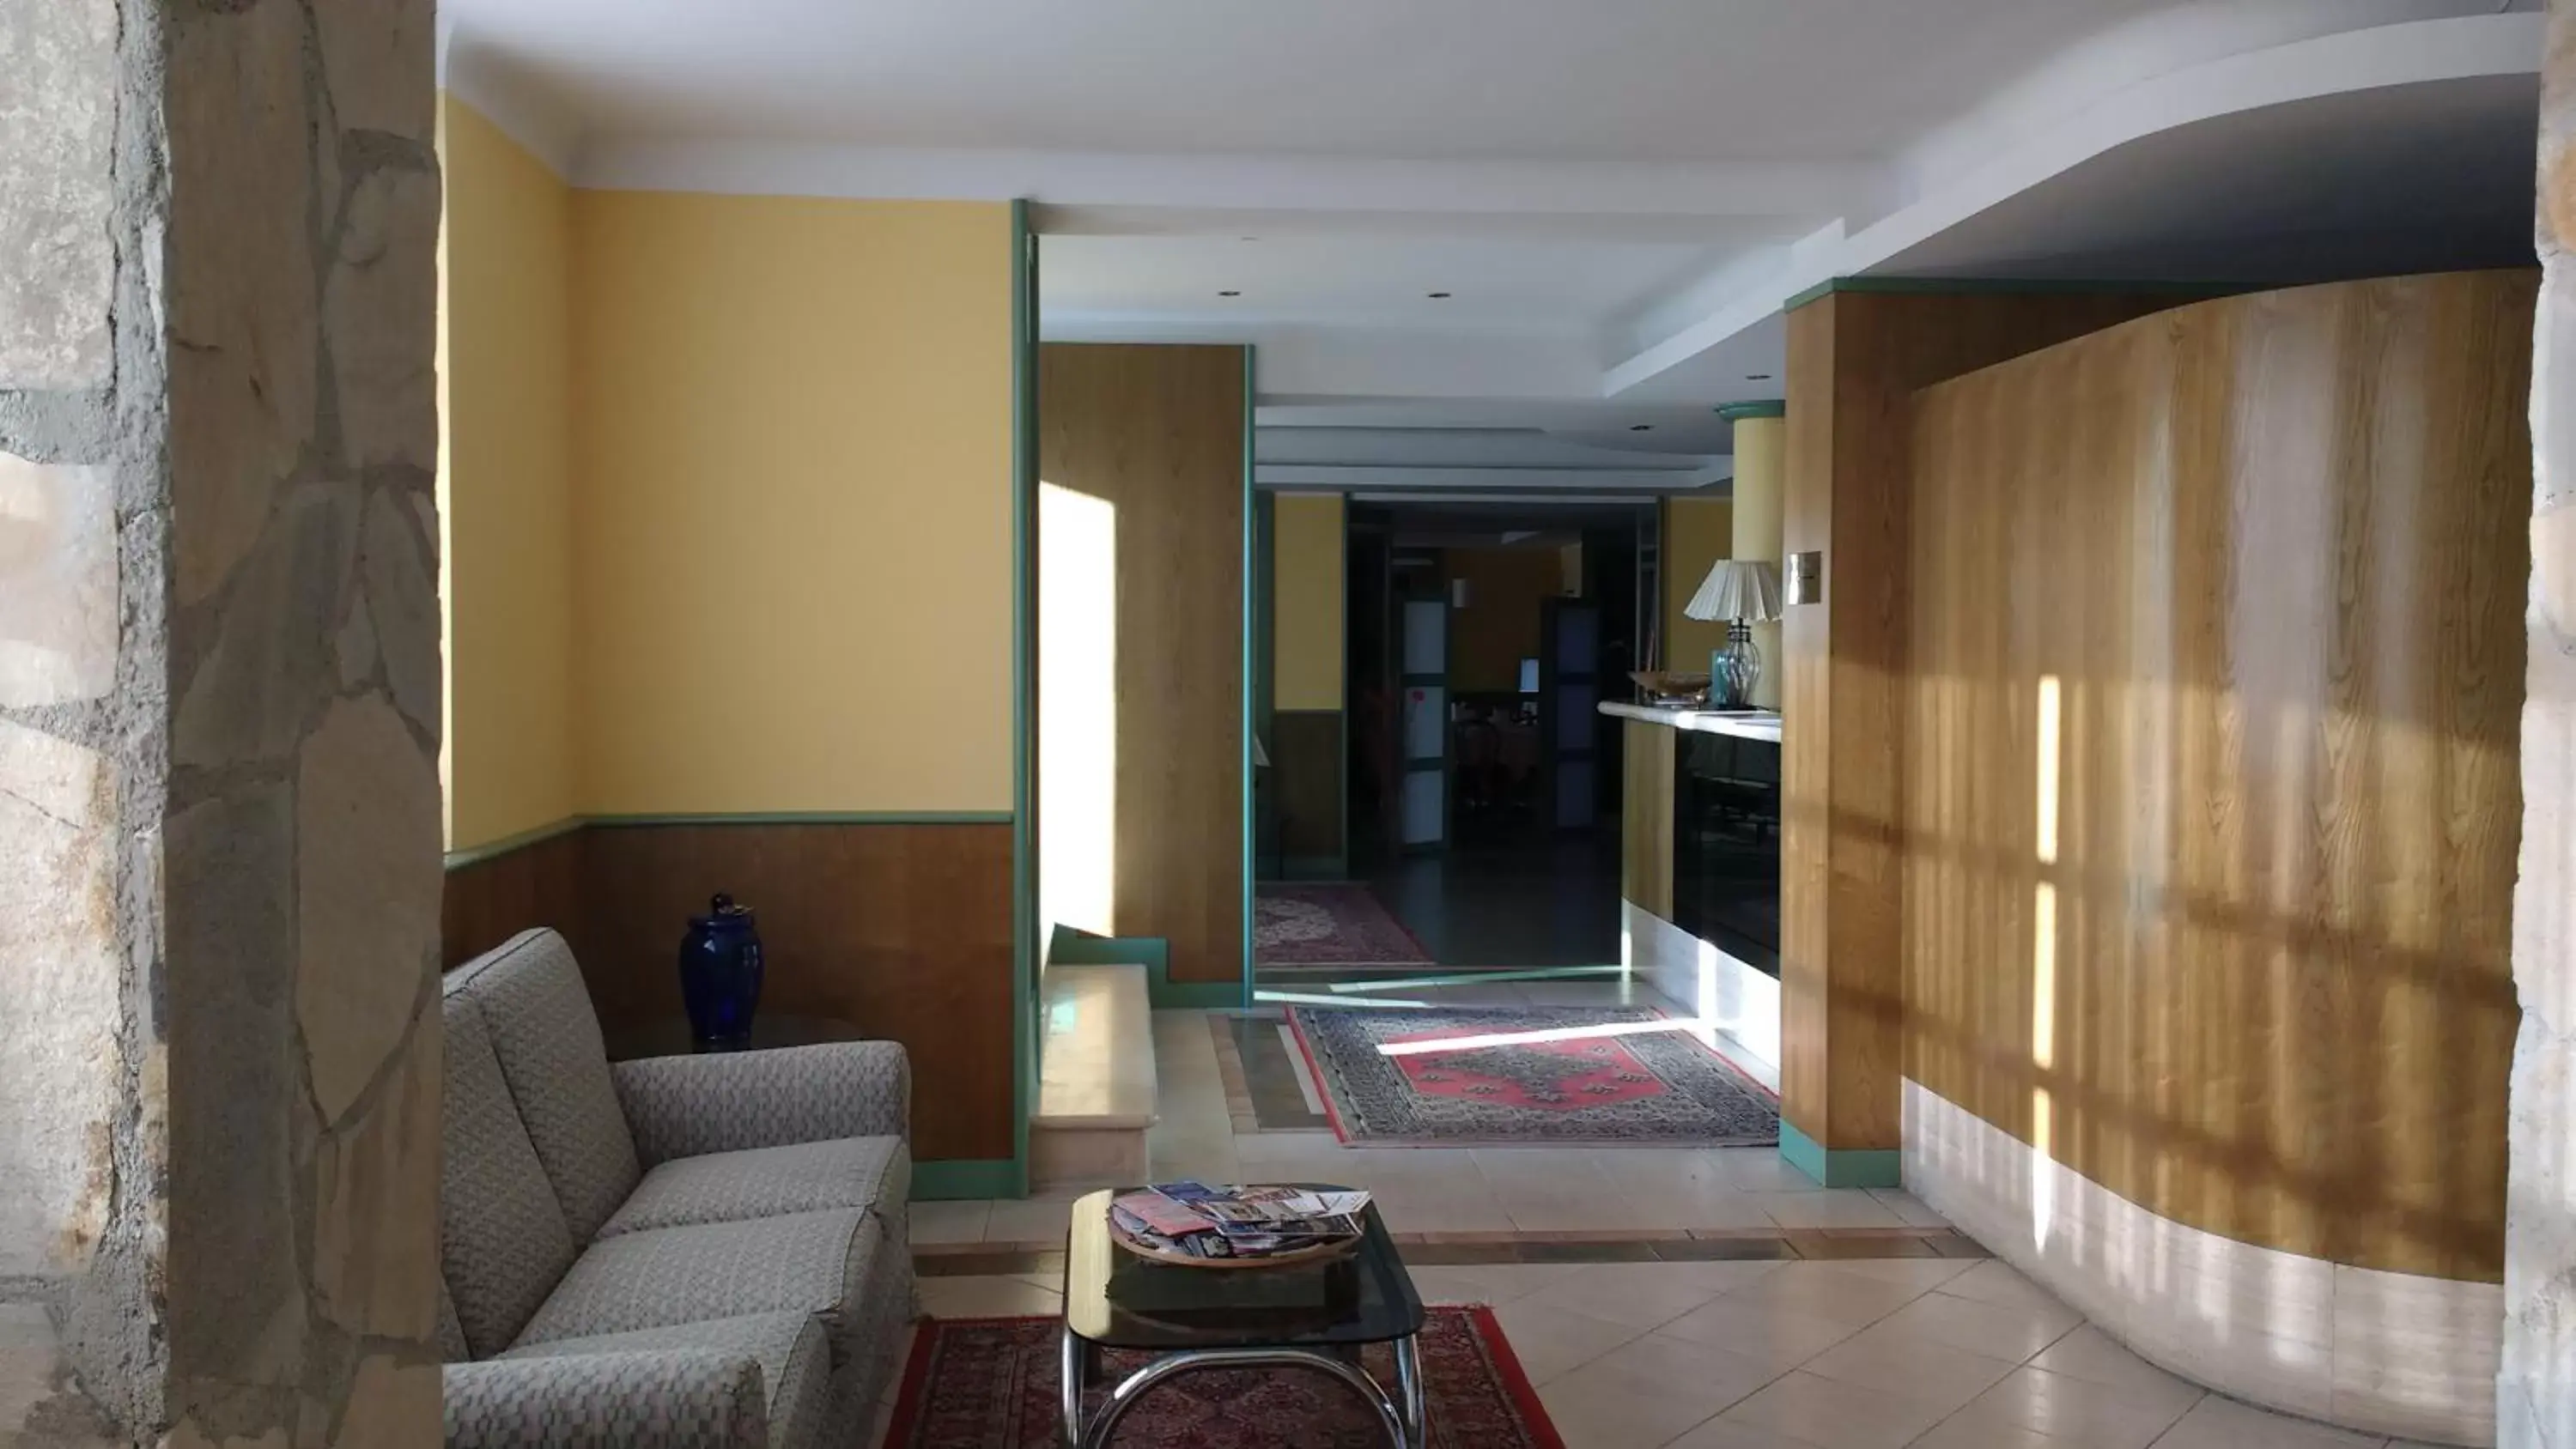 Area and facilities, Lobby/Reception in Hotel La Goletta